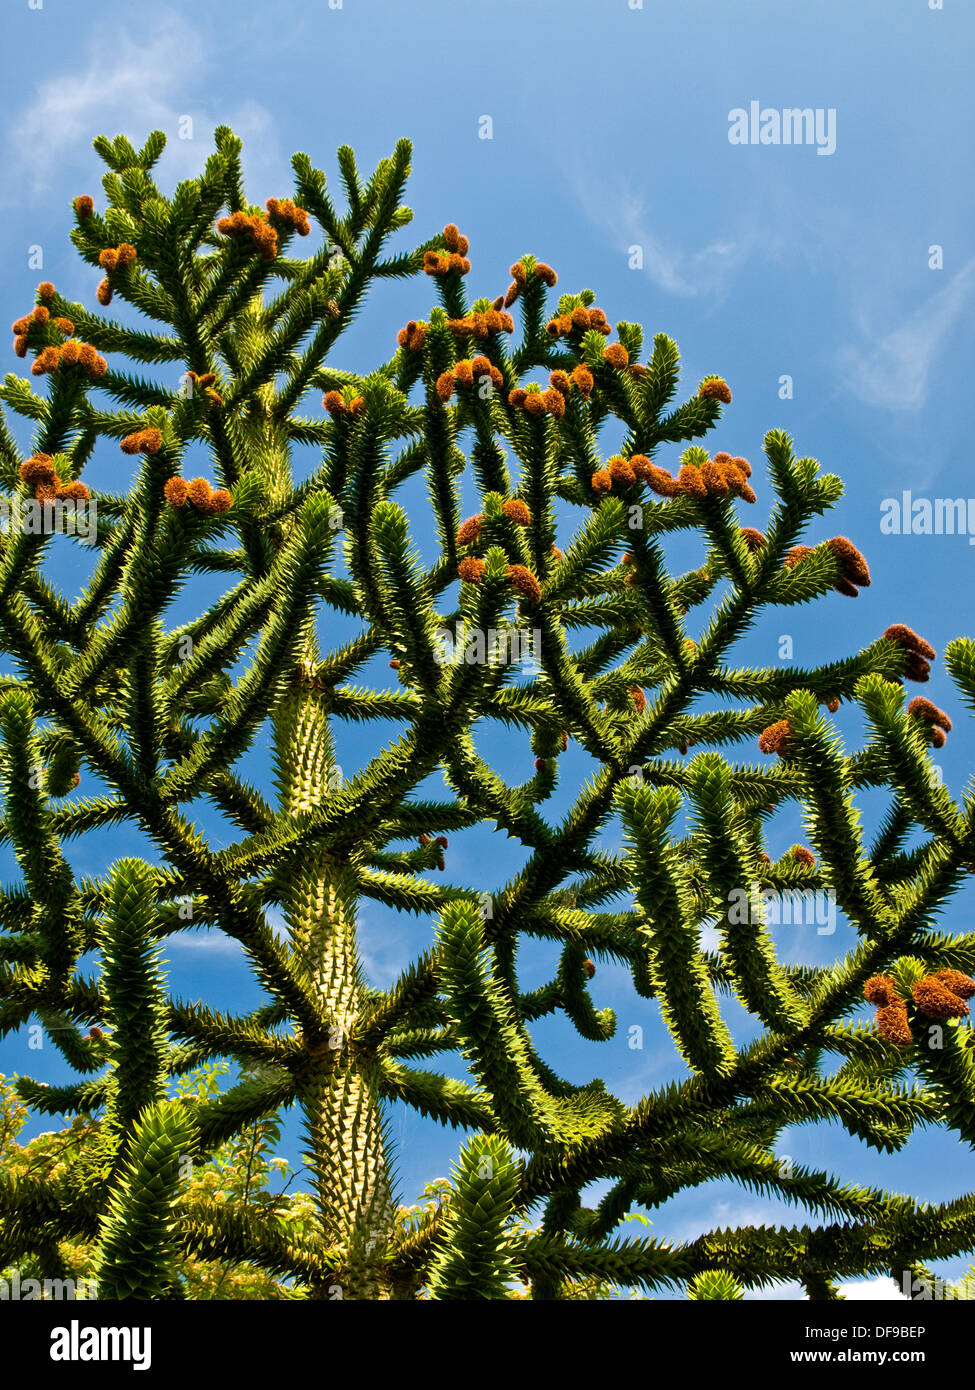 Tronco, ramas y flores de pehuén (Araucaria araucana). Foto de stock